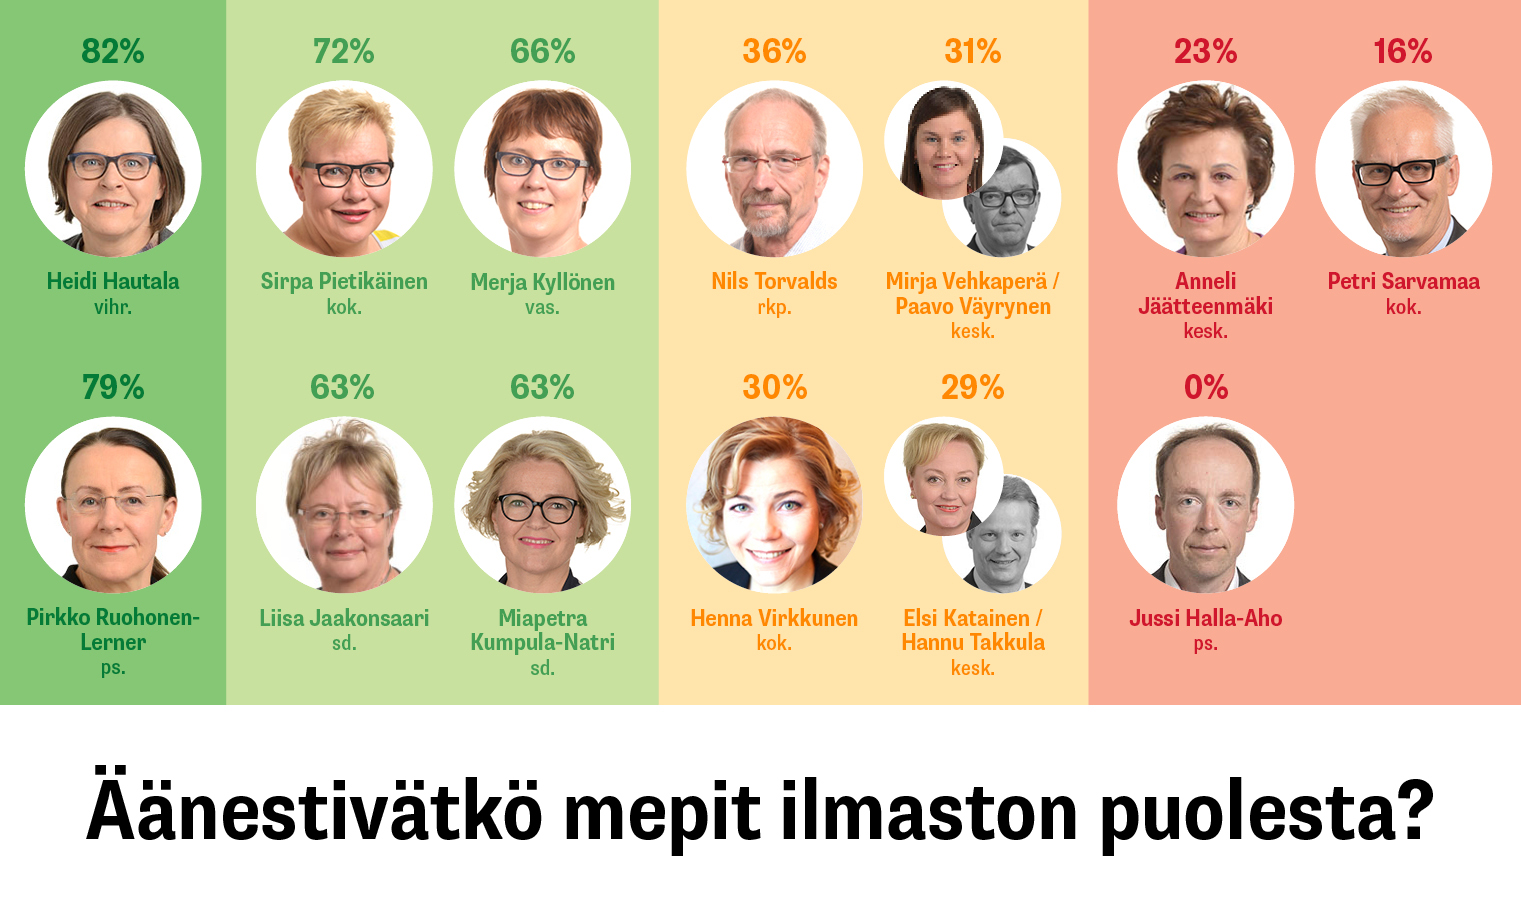 Suomalaisten meppien selvityksessä saamat pisteet ryhmiteltynä neljään kategoriaan. Sisältö on kerrottu tekstissä